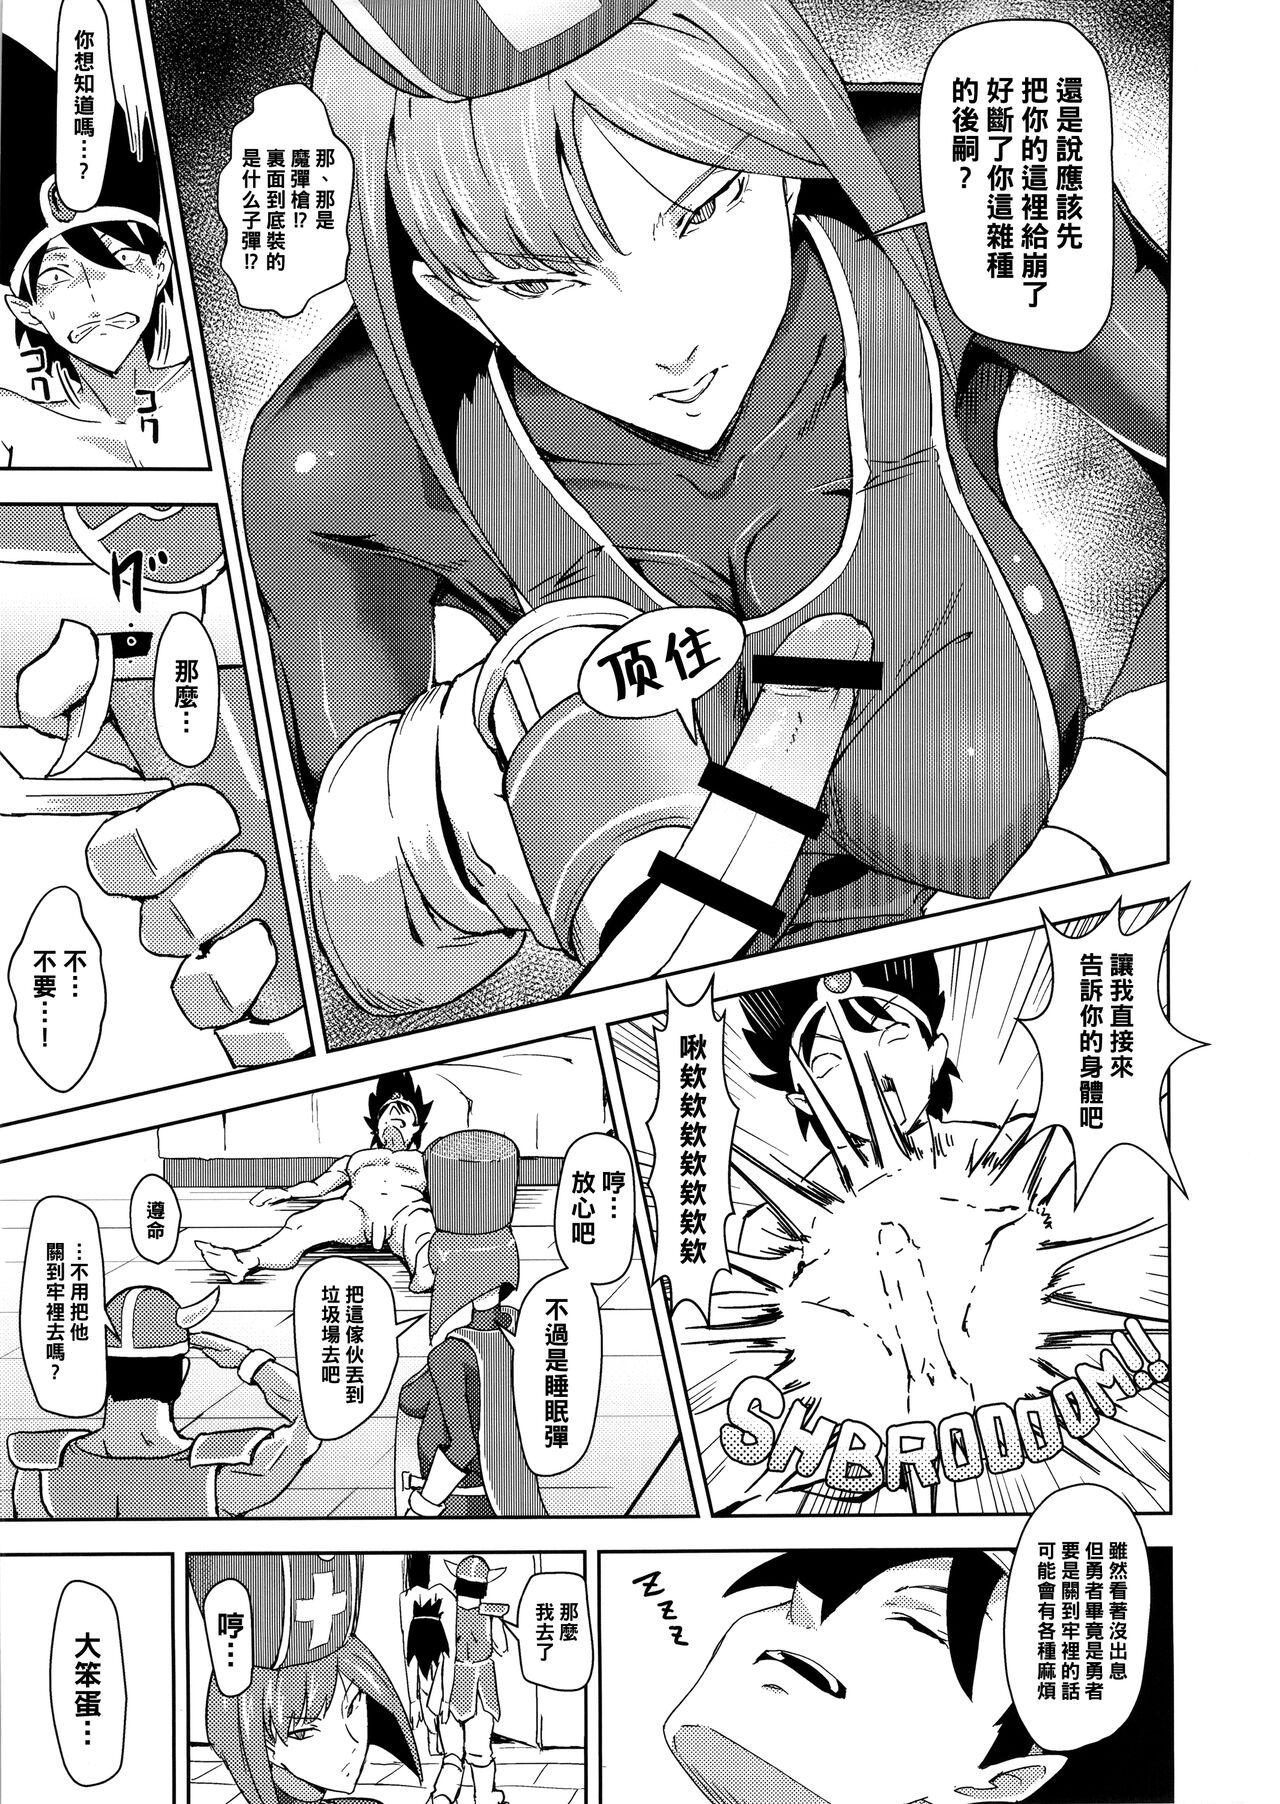 Little Namaiki na Onna Souryo ni Medapani o Kurawasero! + Shadow Galko-chan - Dragon quest iii Oshiete galko chan Foreskin - Page 9